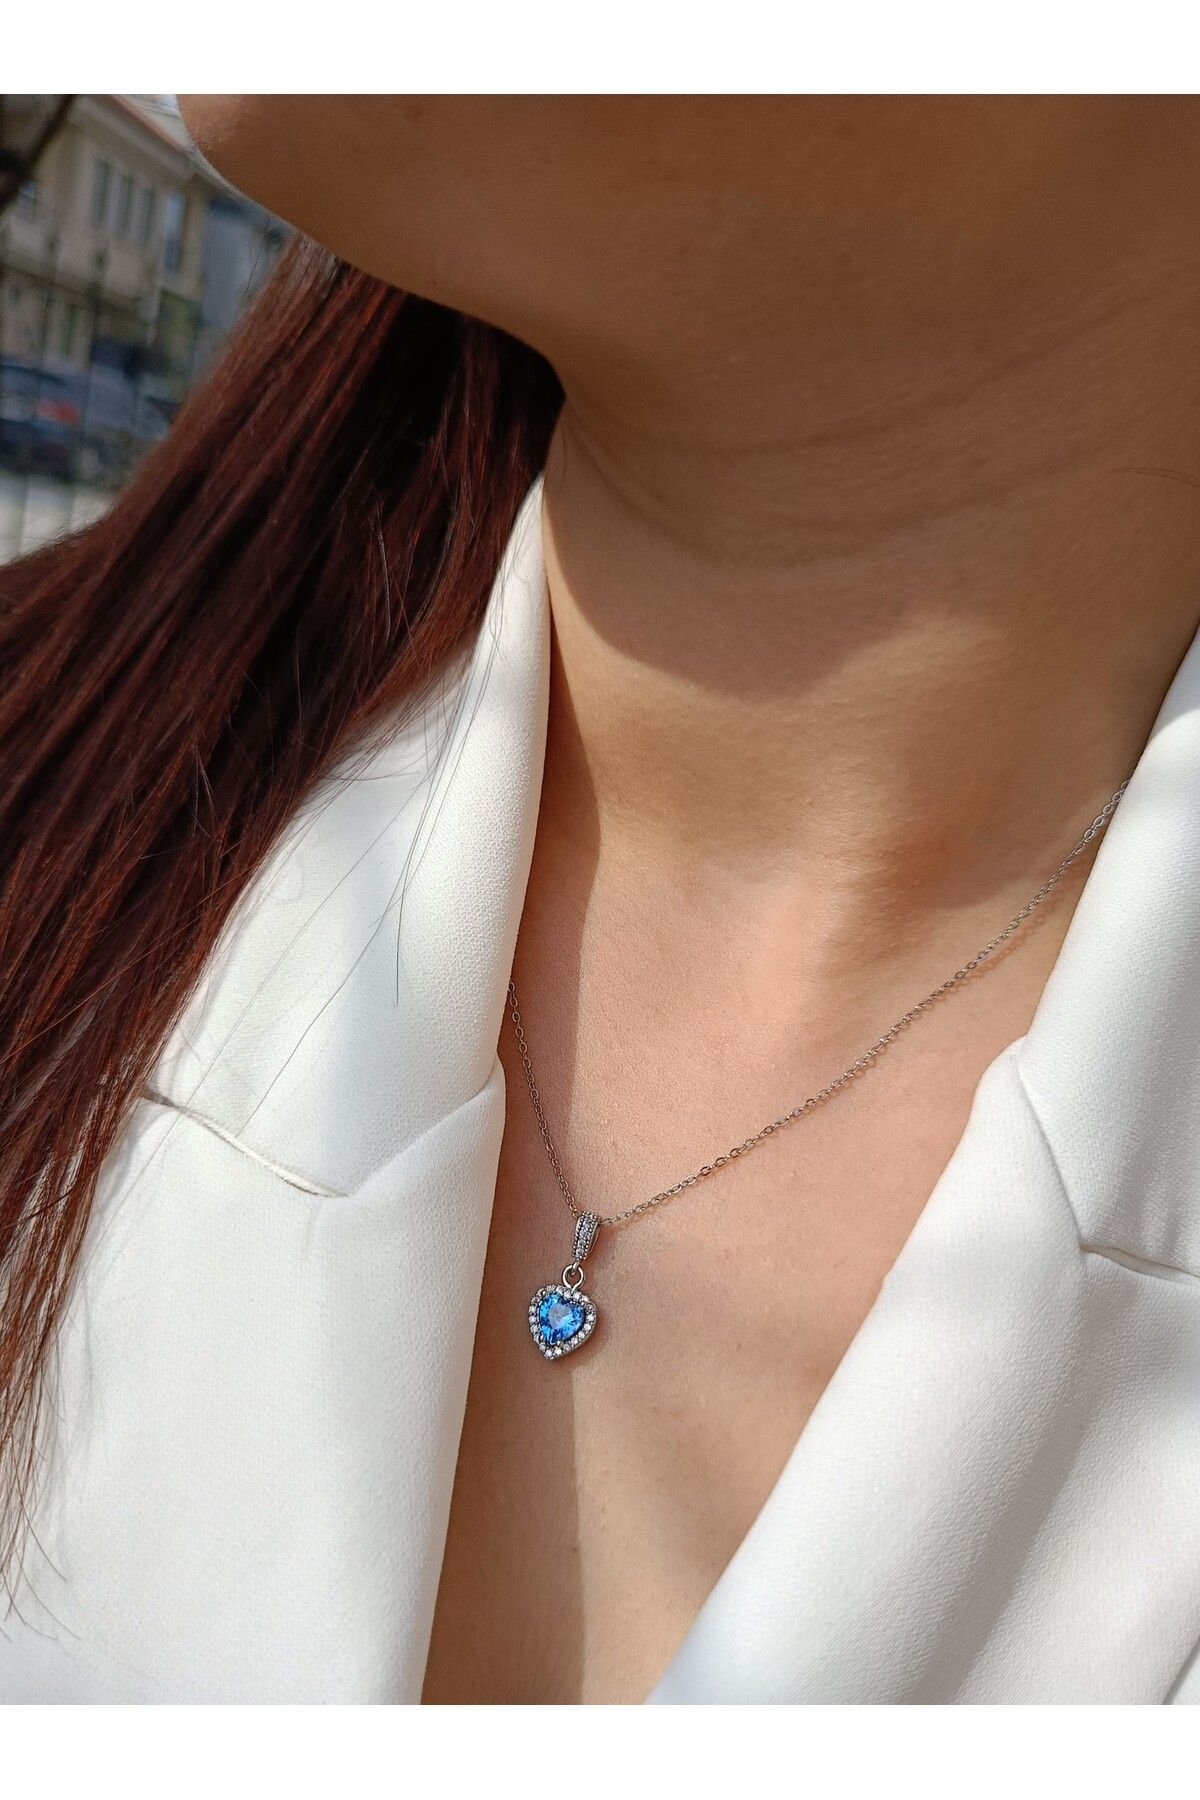 Luna Jewelry Kadın Pırlanta Modeli Mavi Zirkon Taşlı 316 L Çelik Kalp Kolye